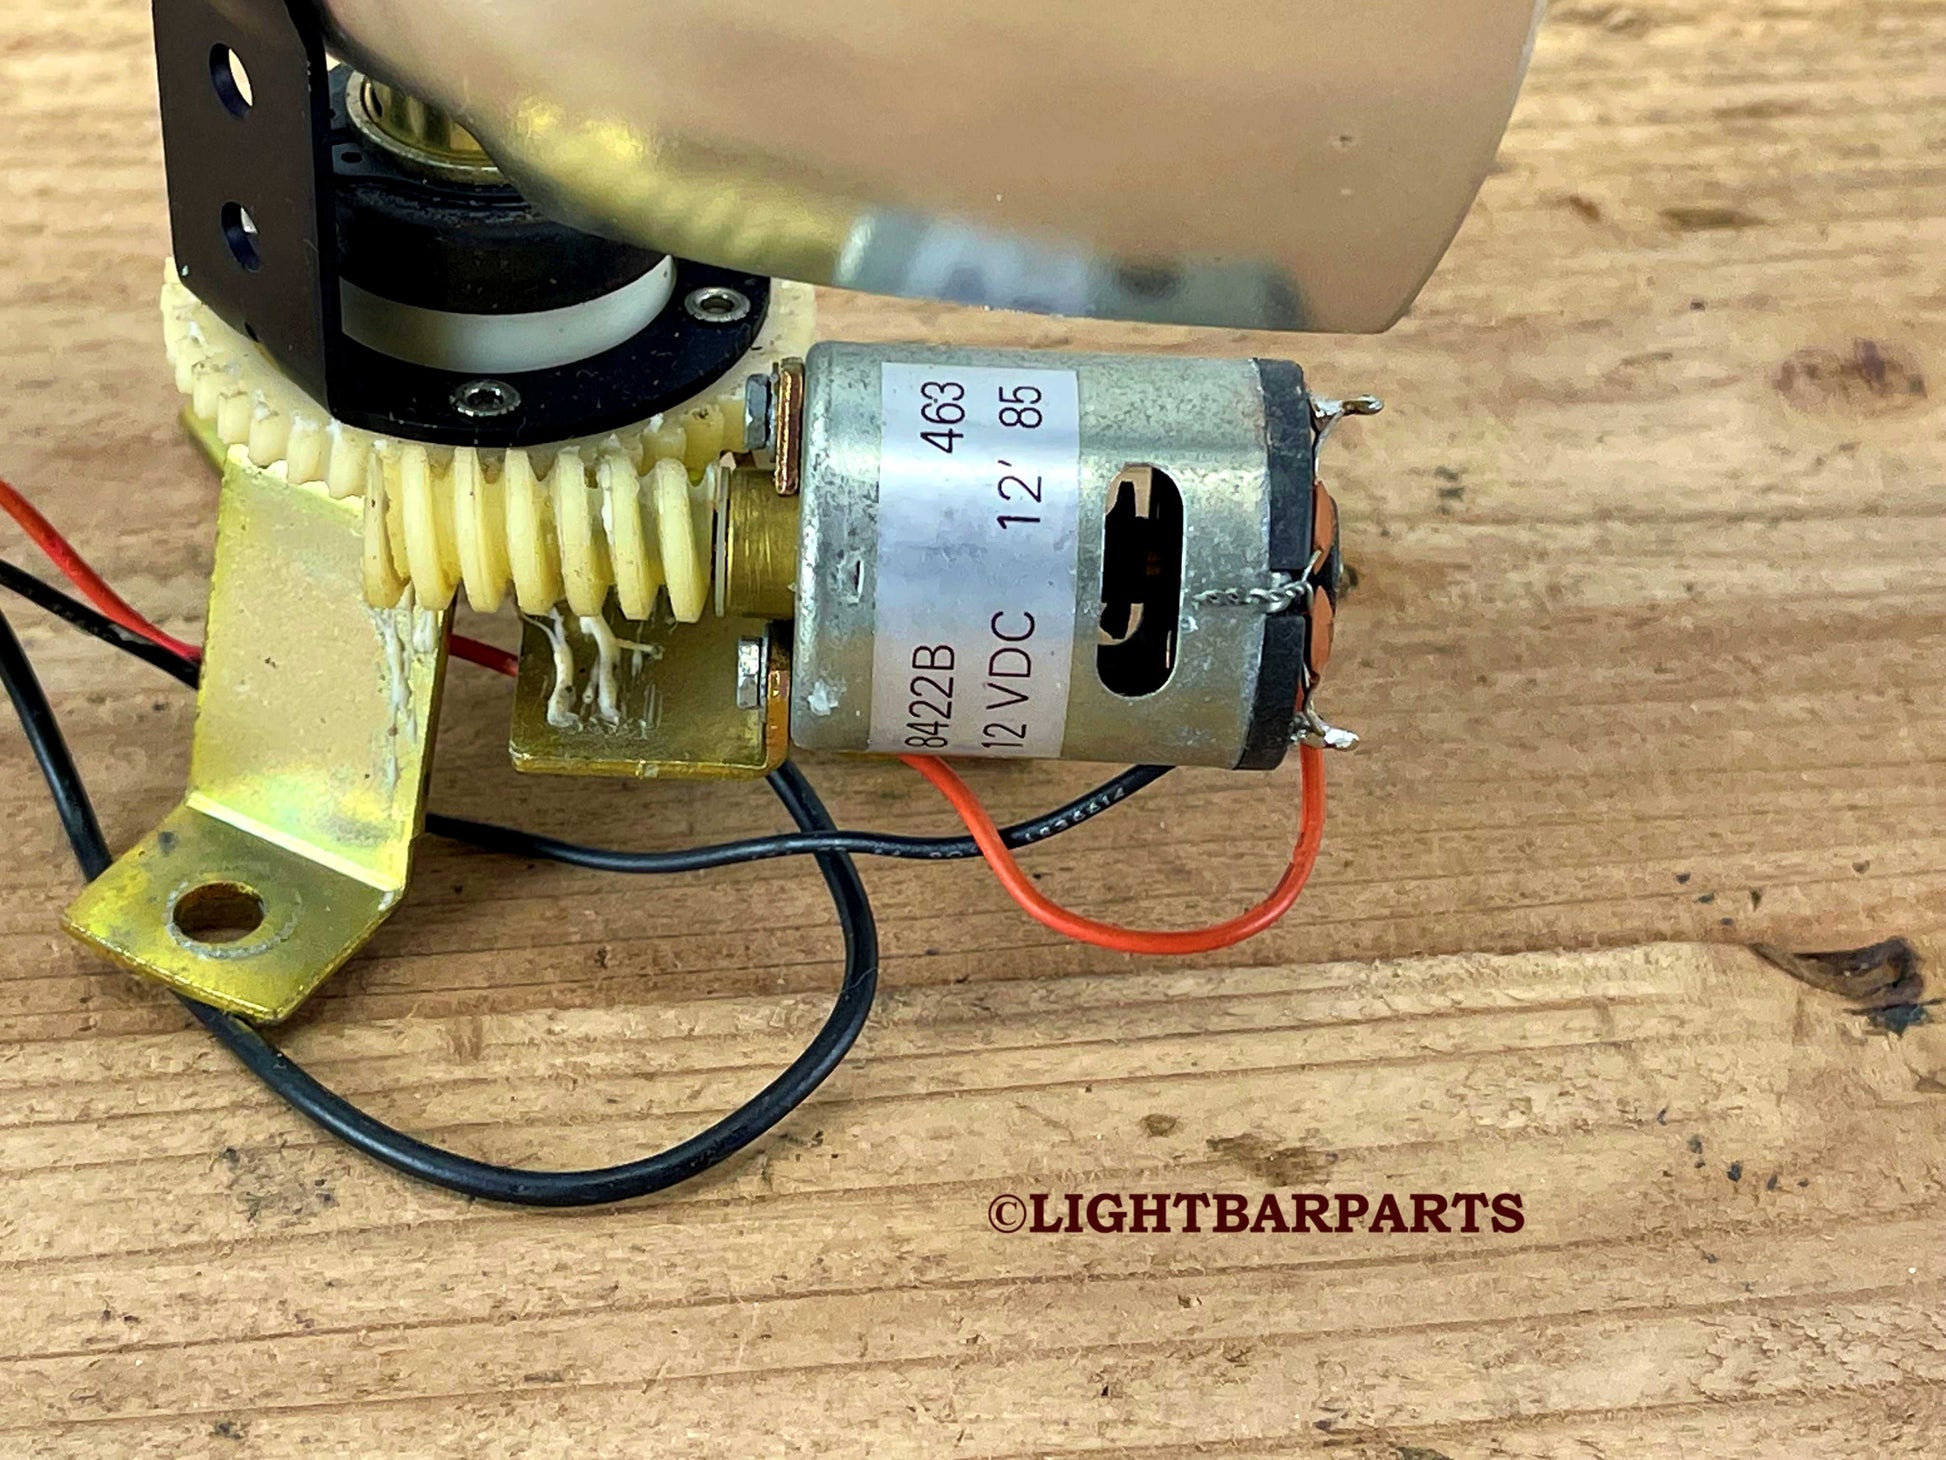 Federal Signal StreetHawk Lightbar - Regular Speed Rotator with Twist Lock Bulb